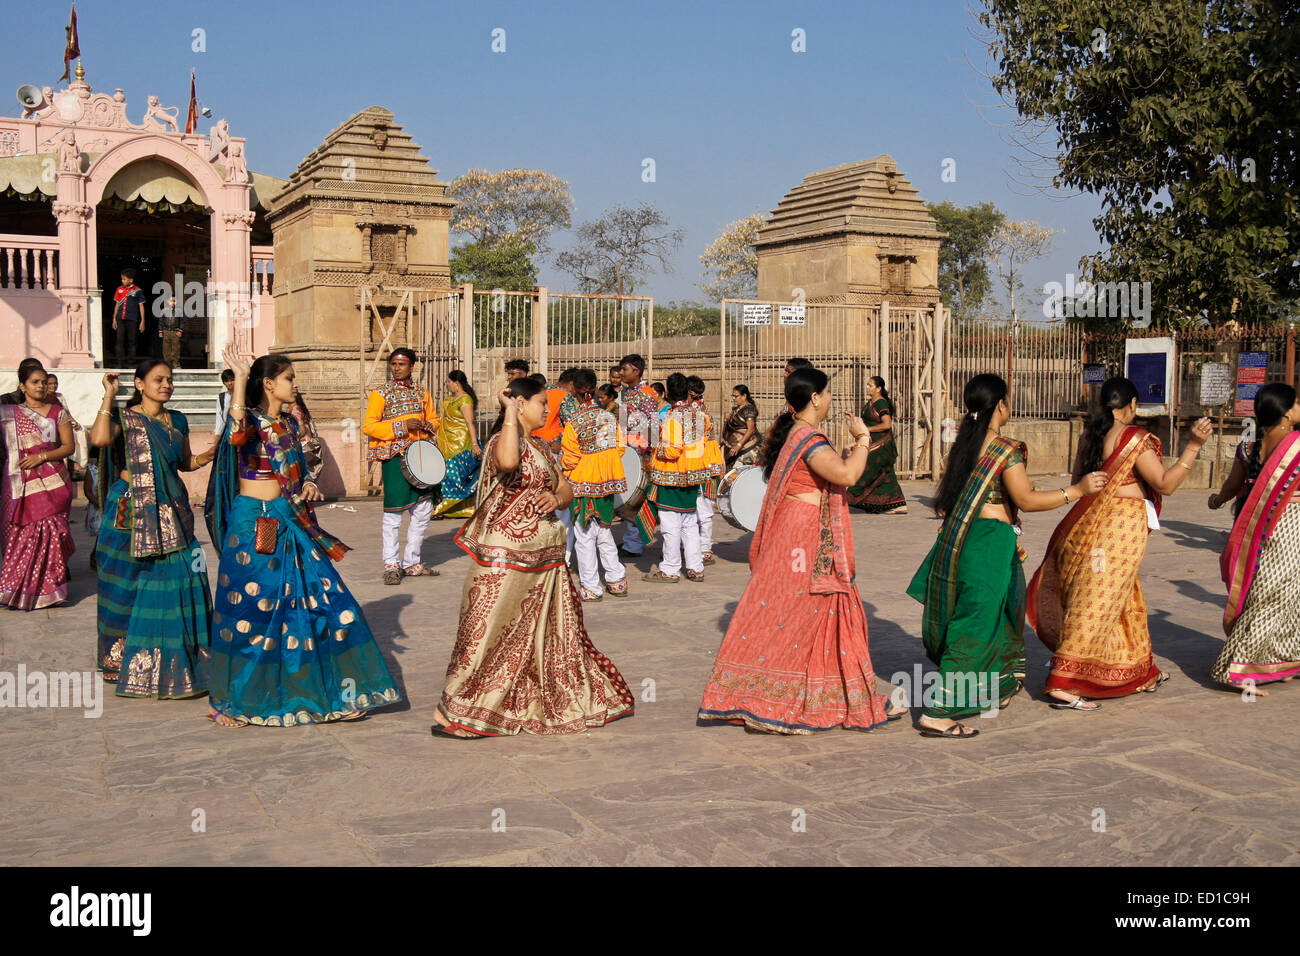 Les femmes exécutant Garba dance au temple hindou, Gujarat, Inde Banque D'Images